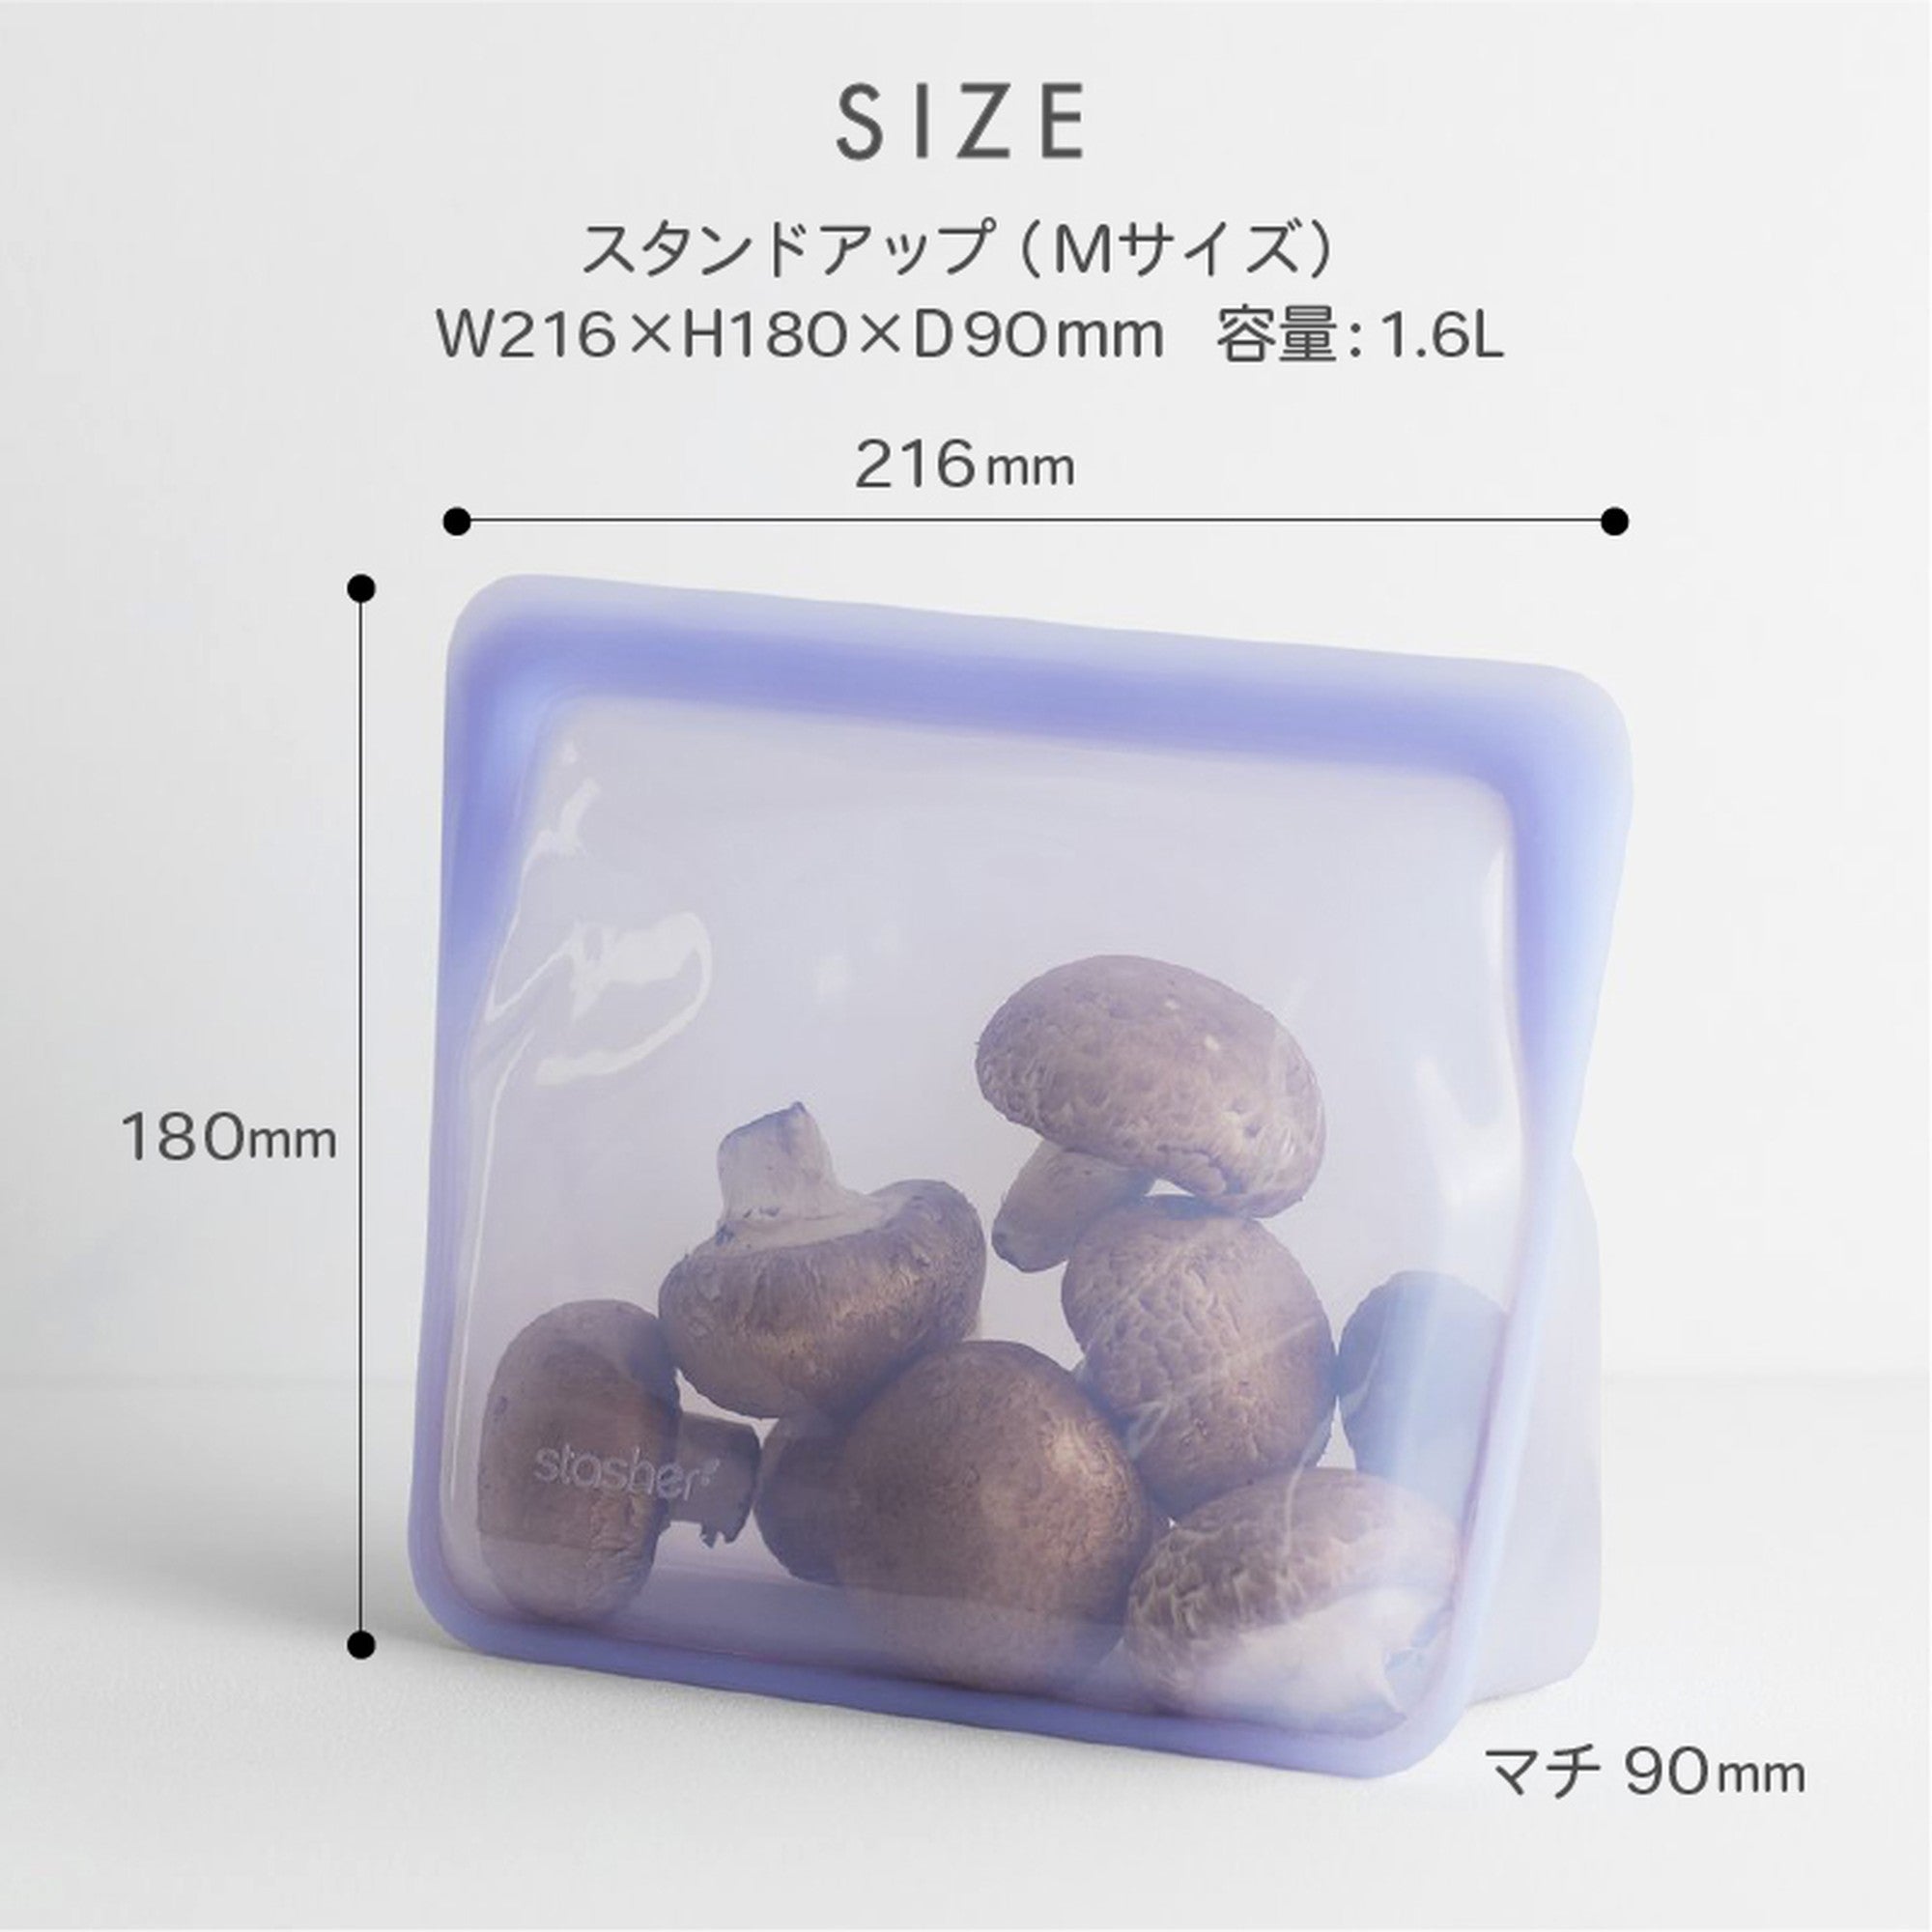 【3個セット】スタッシャー シリコンバッグ stasher 日本正規品 スタンドアップ Mサイズ 6色